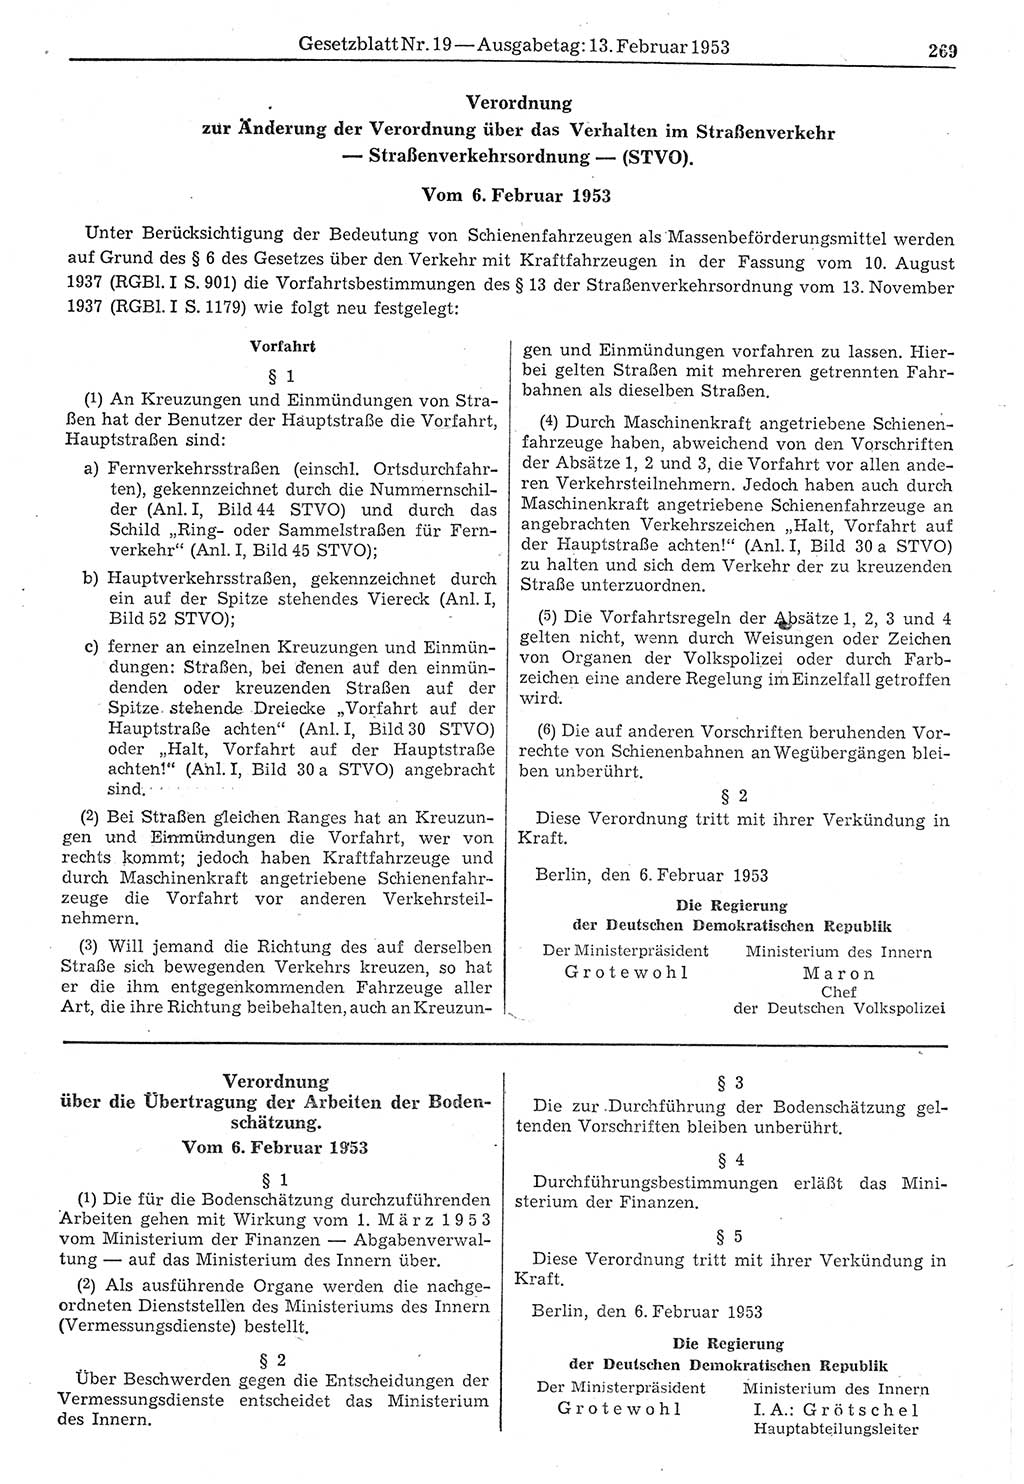 Gesetzblatt (GBl.) der Deutschen Demokratischen Republik (DDR) 1953, Seite 269 (GBl. DDR 1953, S. 269)